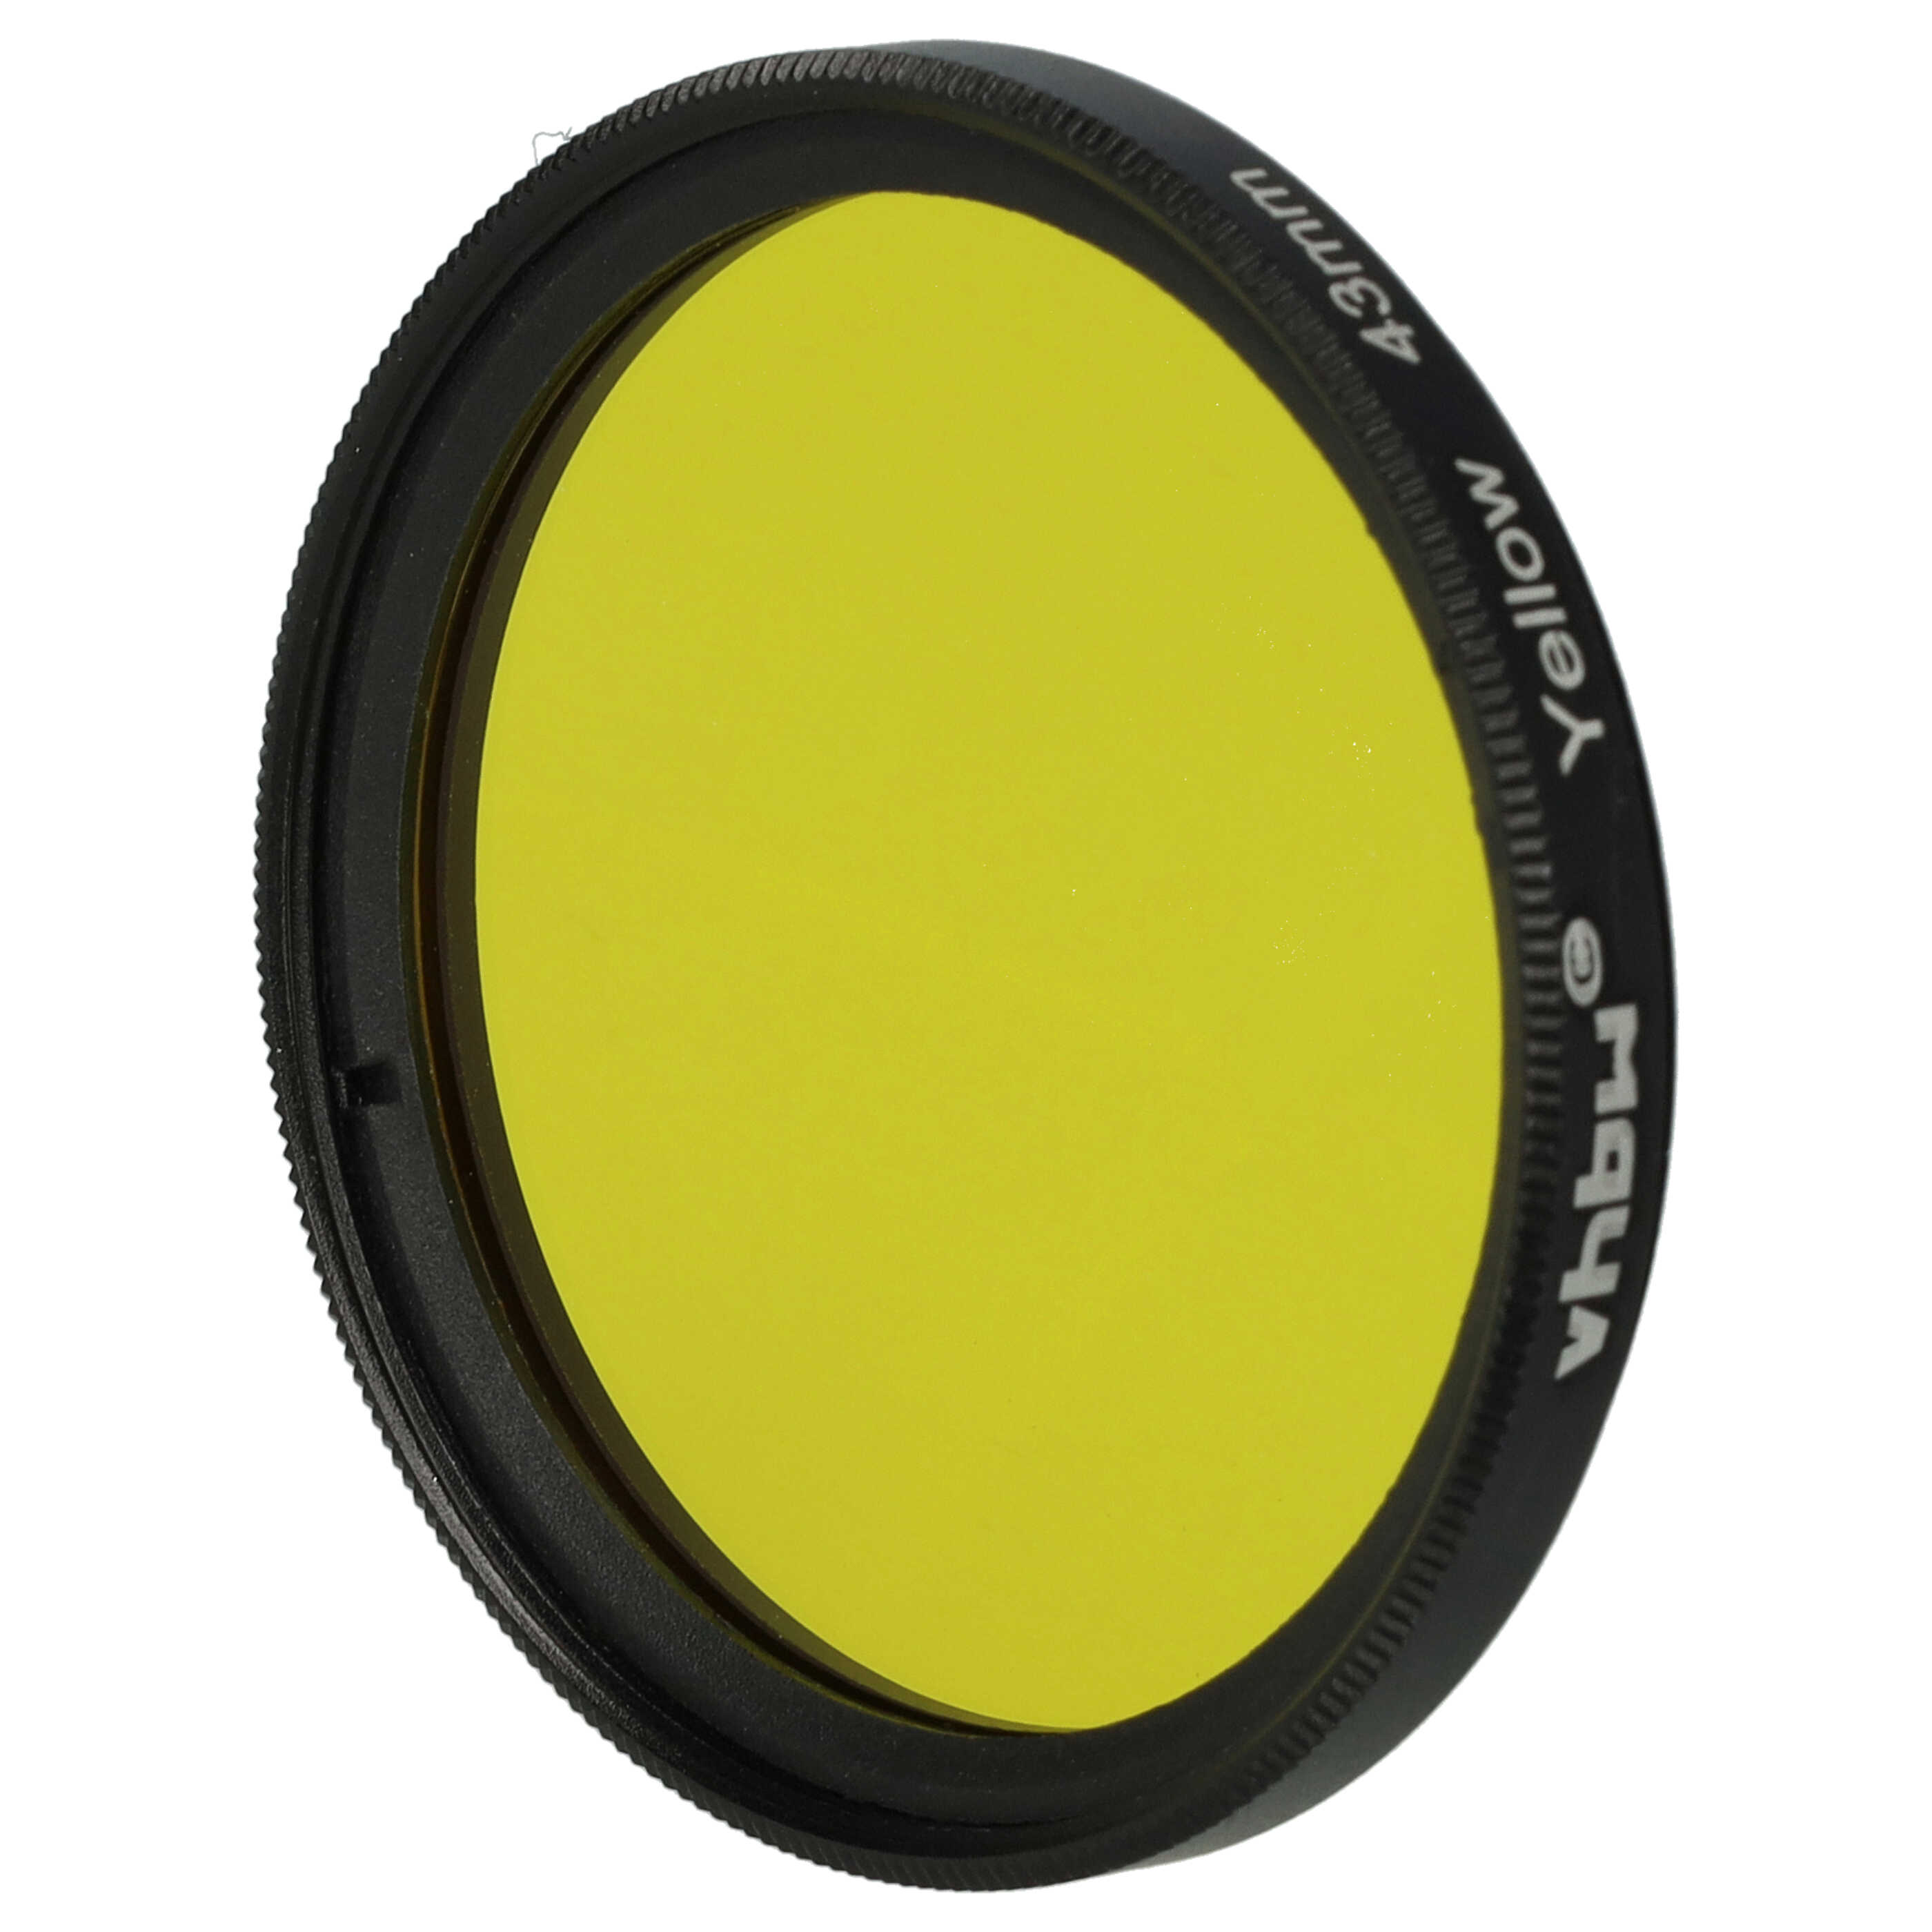 Filtro de color para objetivo de cámara con rosca de filtro de 43 mm - Filtro amarillo